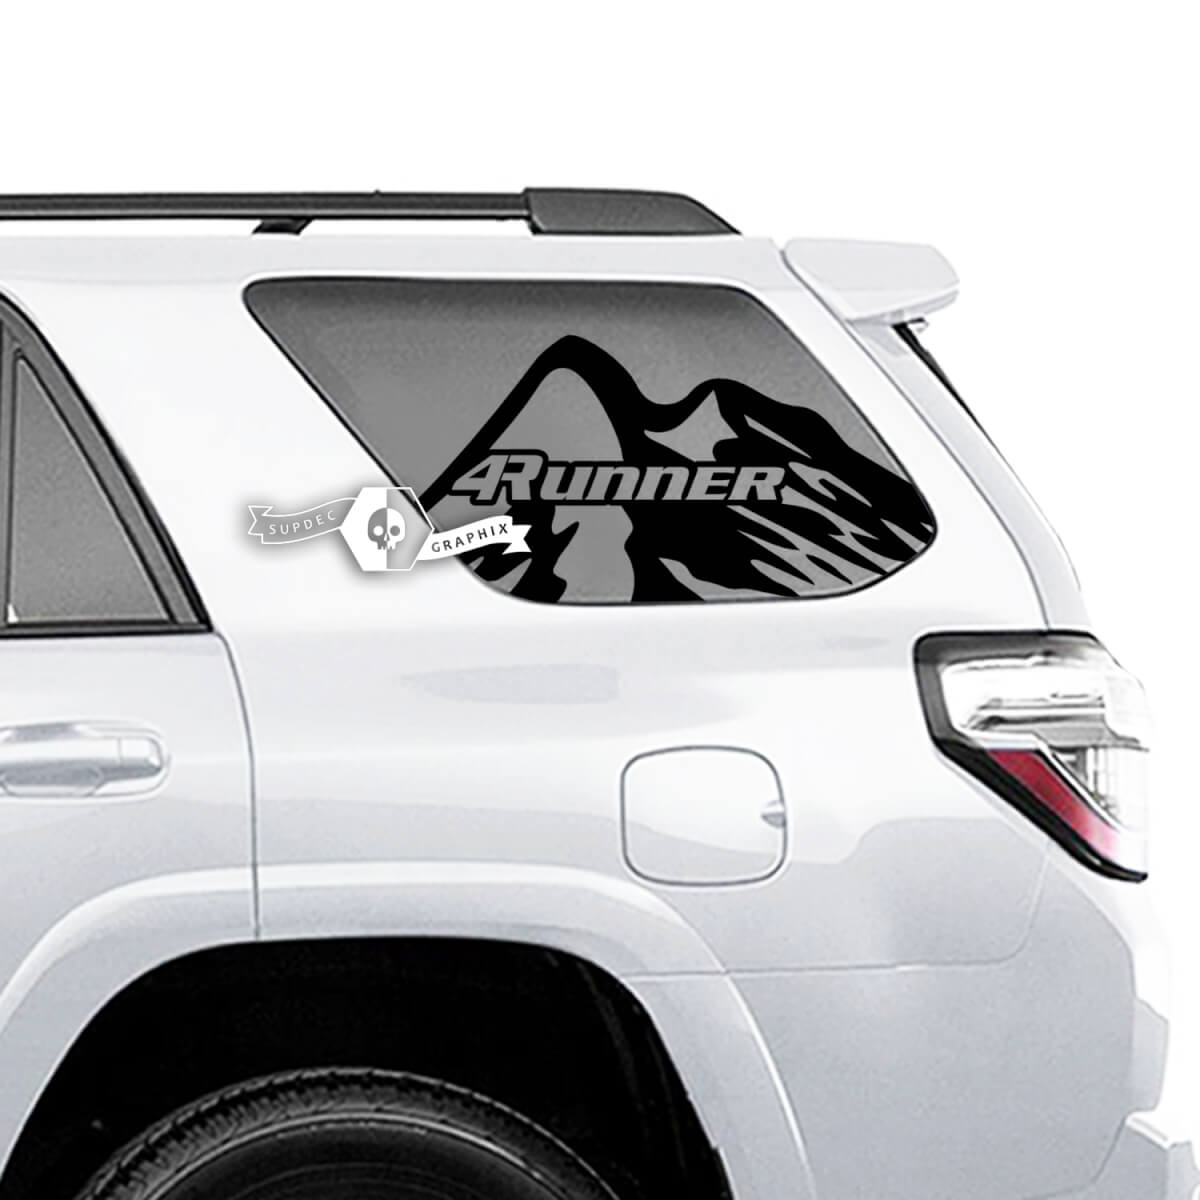 Paar 4Runner Window Mountains Logo seitliche Vinyl-Aufkleber für Toyota 4Runner
